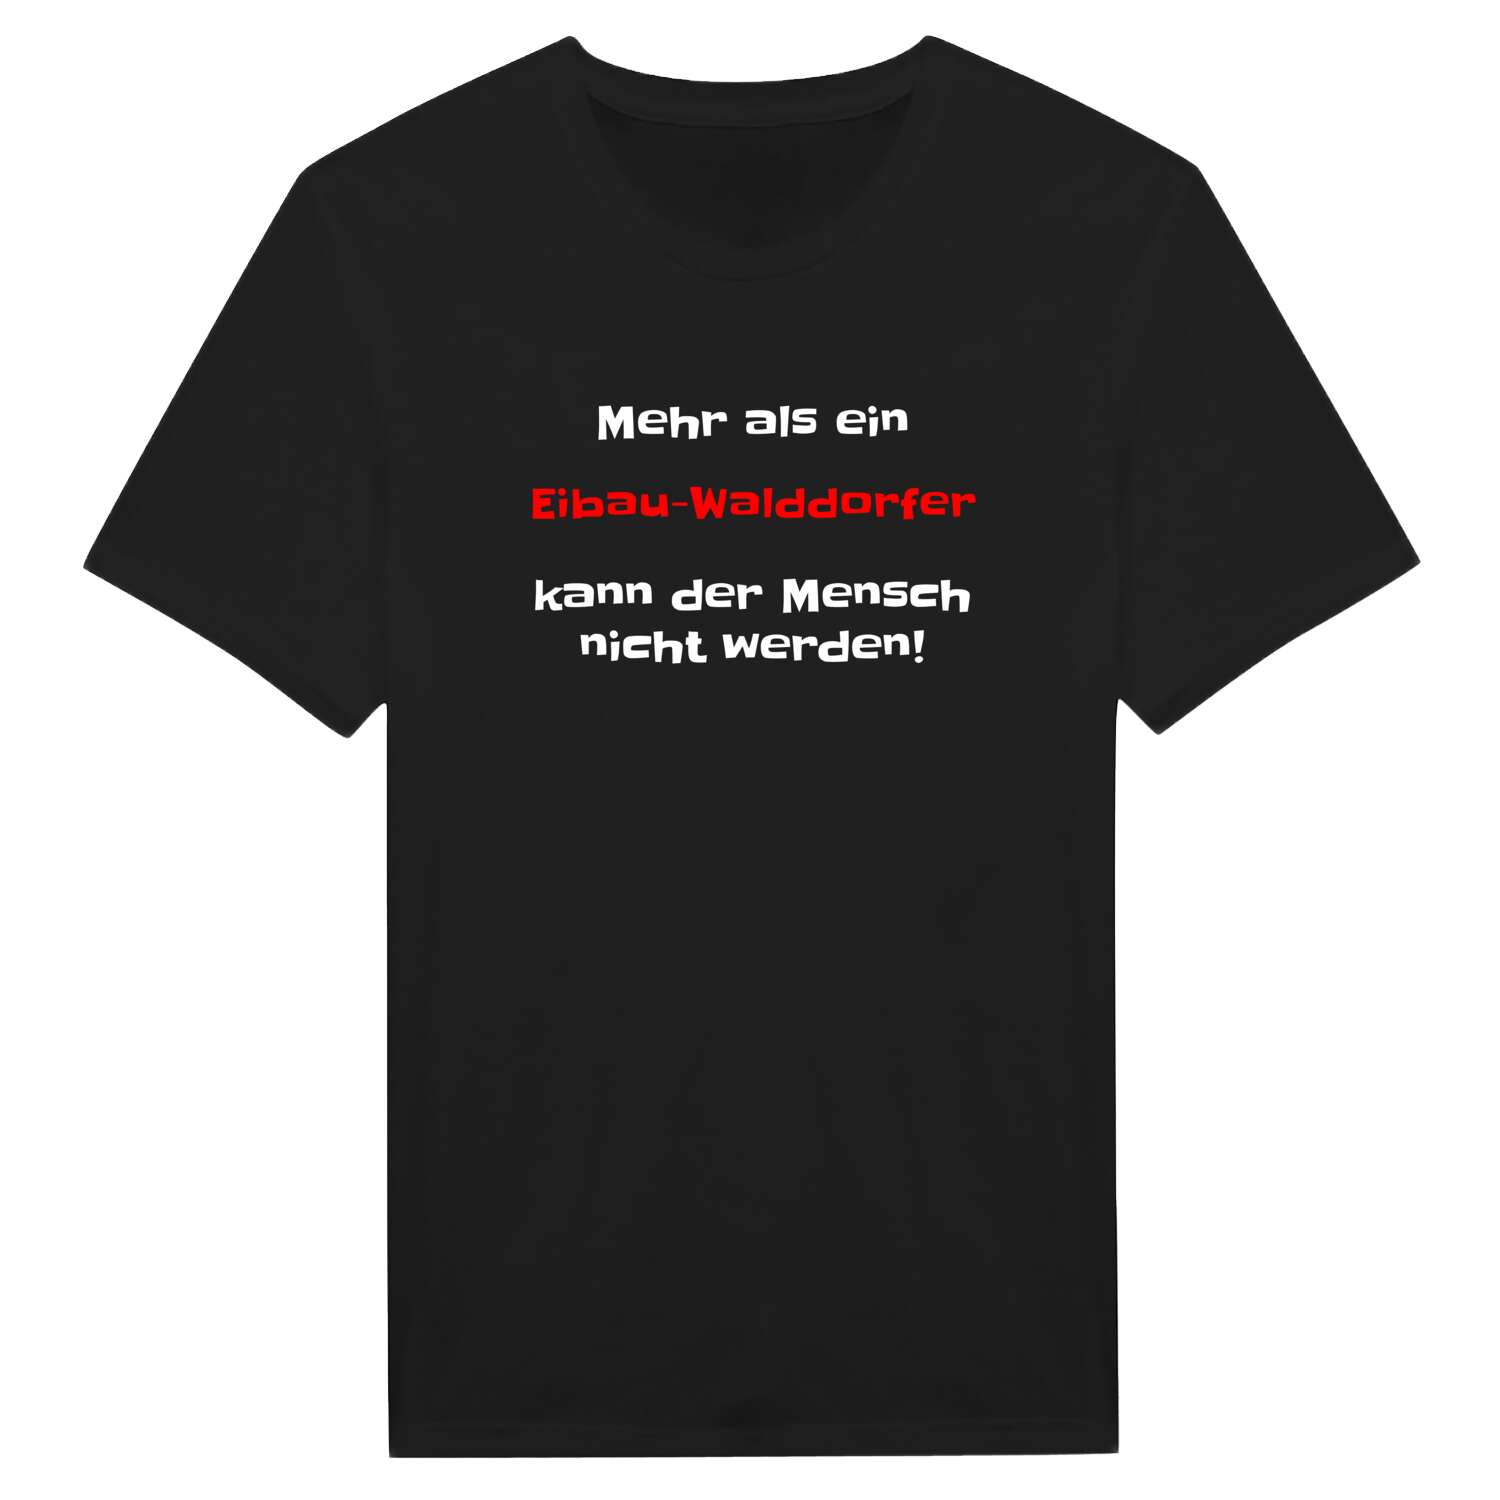 Eibau-Walddorf T-Shirt »Mehr als ein«